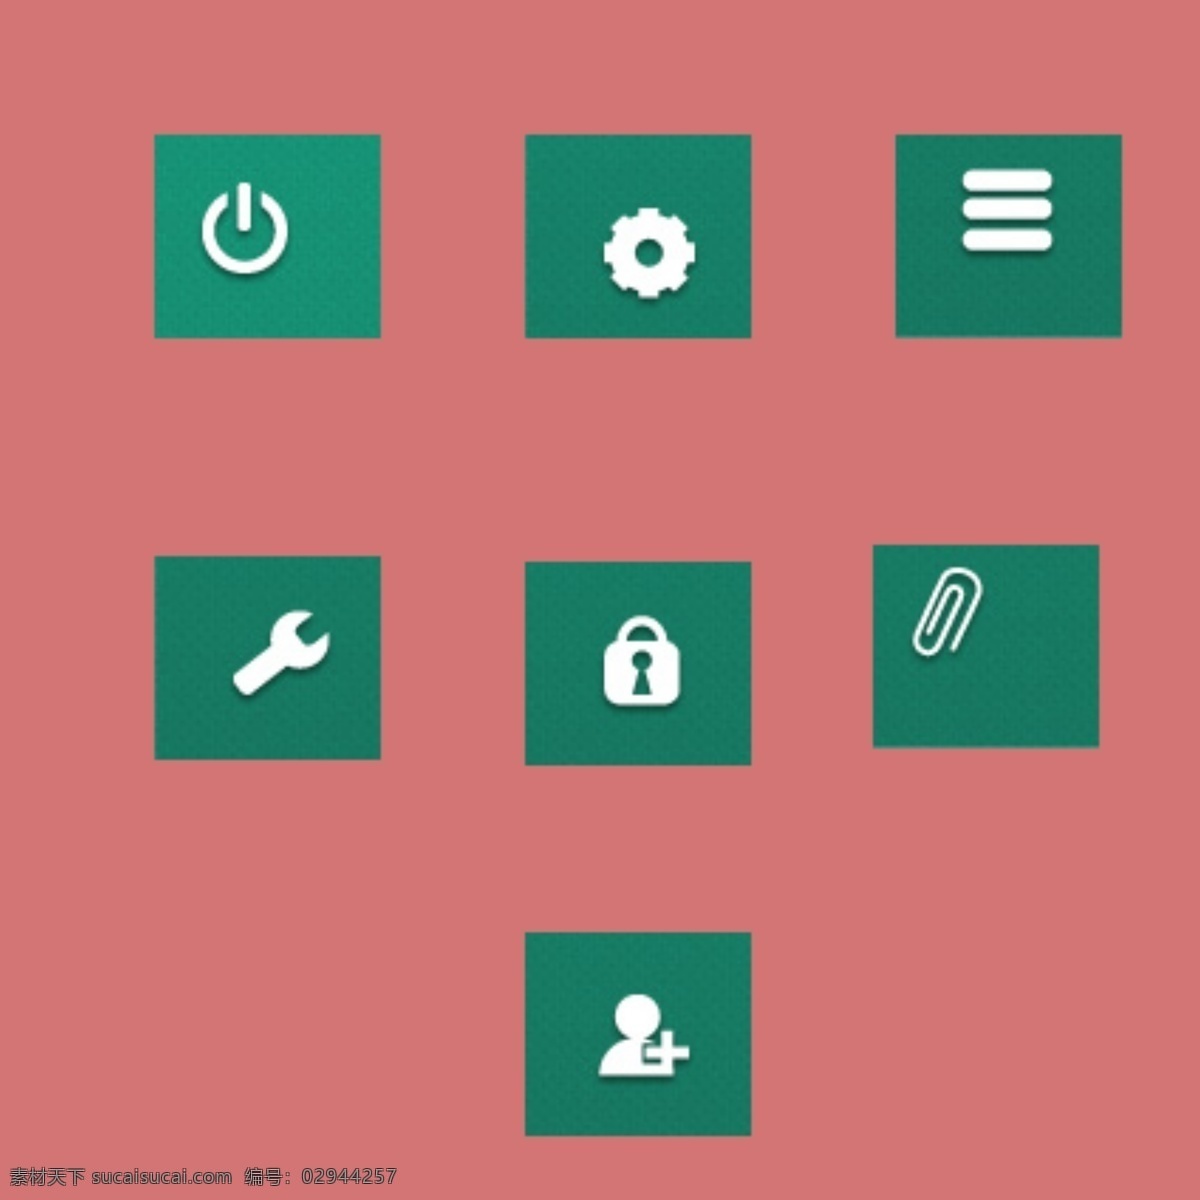 绿色 小 锁 图标 手机 免费 绿色电源图标 按钮 app app图标